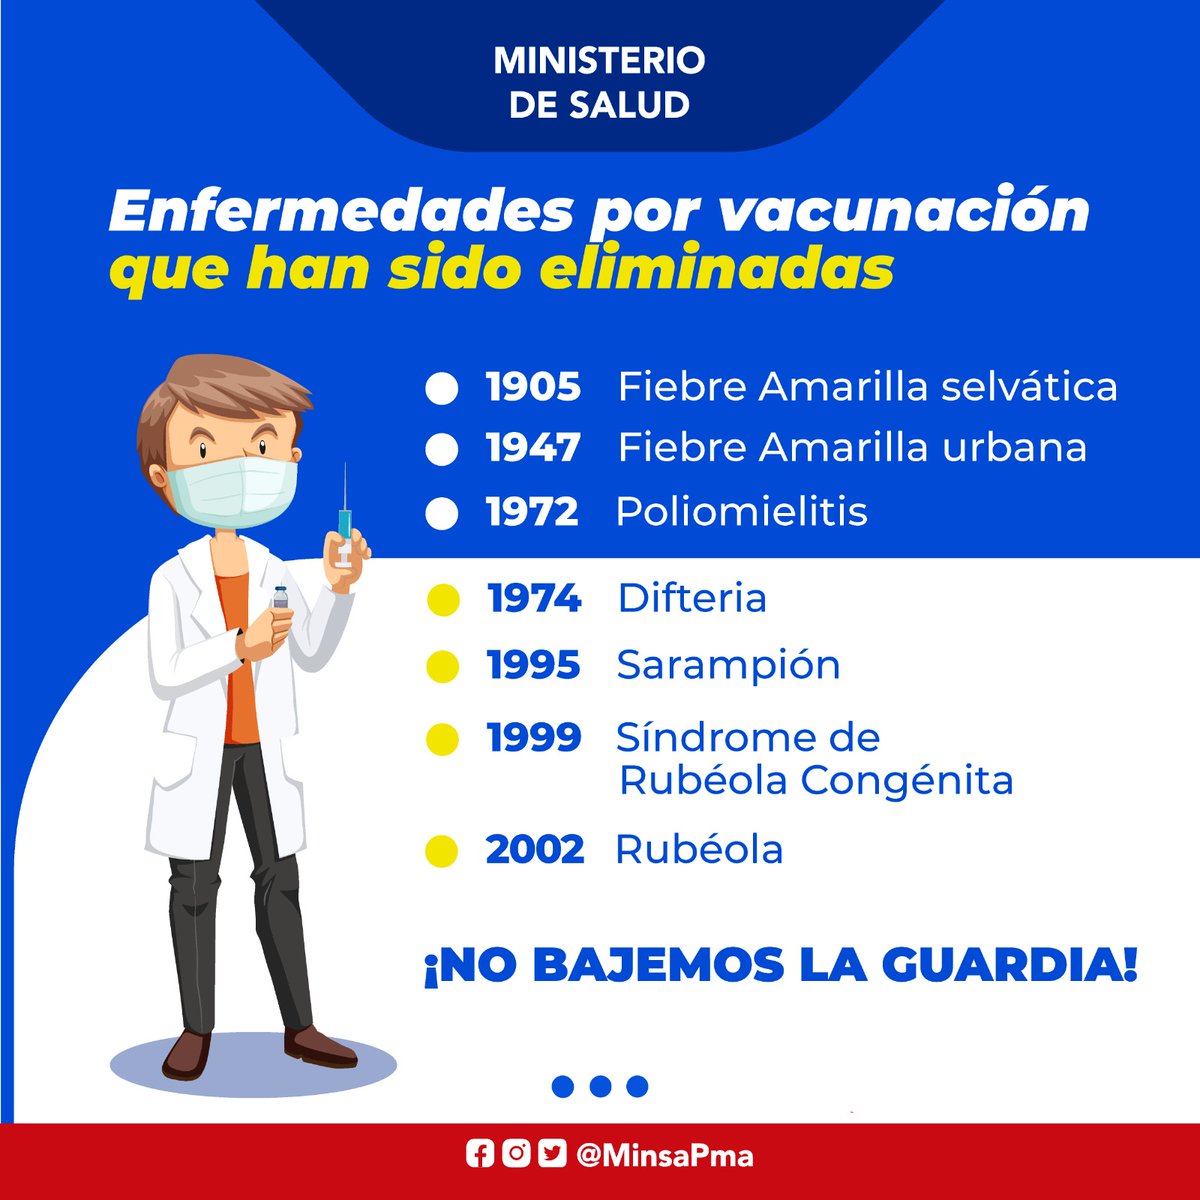 Conoce ¿Qué son las vacunas y qué enfermedades se pueden prevenir al vacunarte, evitando así complicaciones de salud por enfermedades prevenibles? En Panamá, las vacunas del esquema nacional se administran completamente gratis.